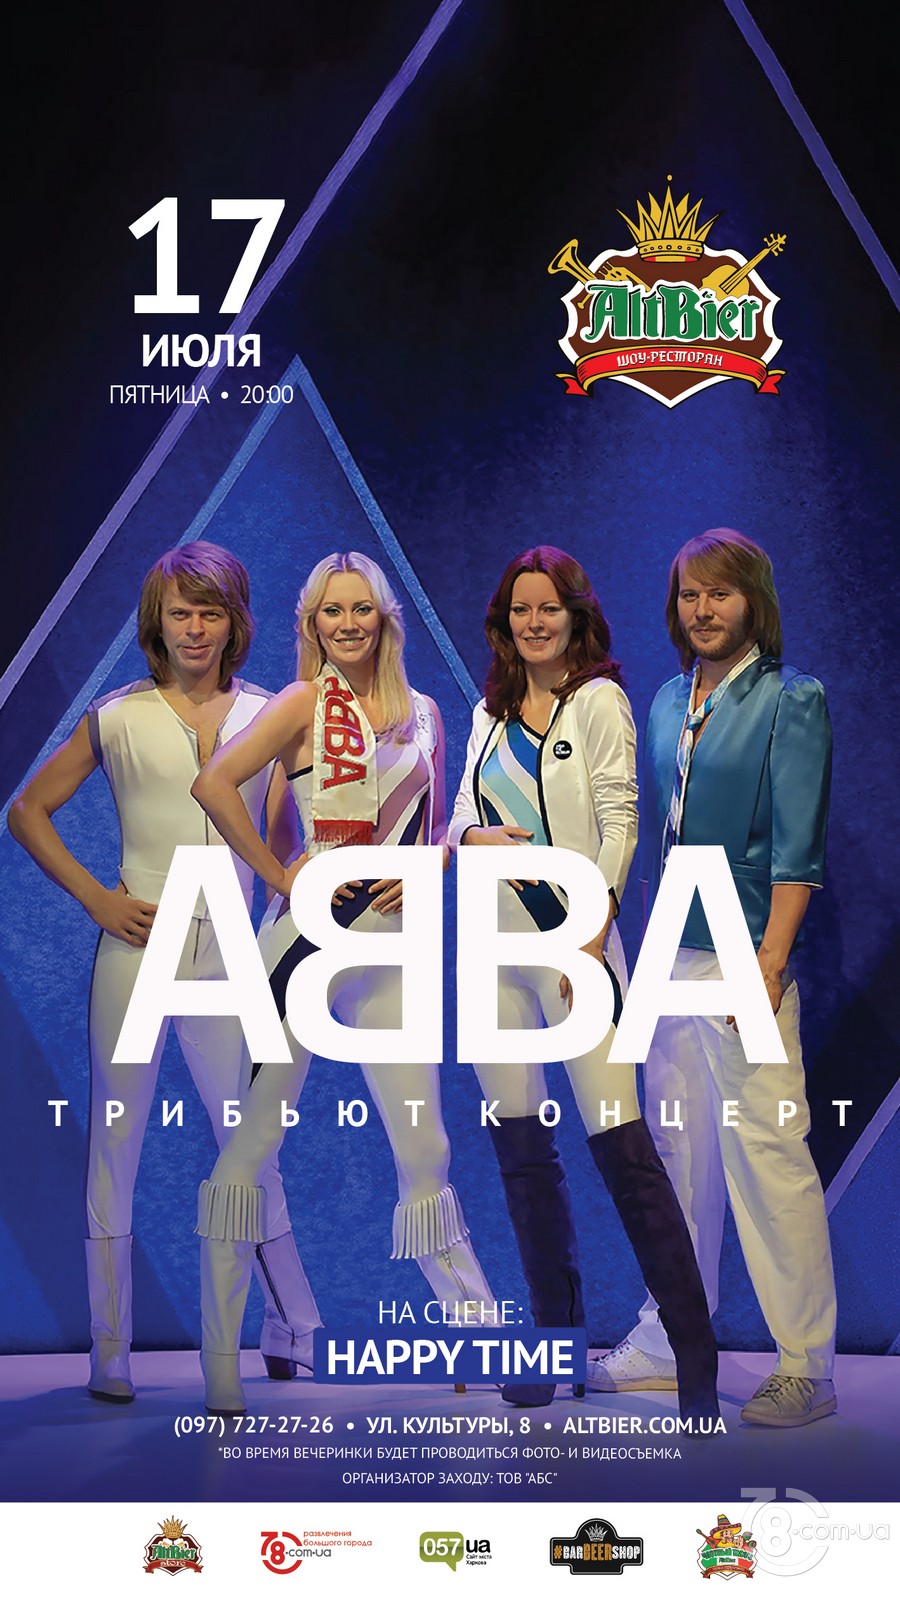 Вечеринка «Трибьют-концерт группы ABBA»* @ Шоу-ресторан AltBier, 17 июля 2020